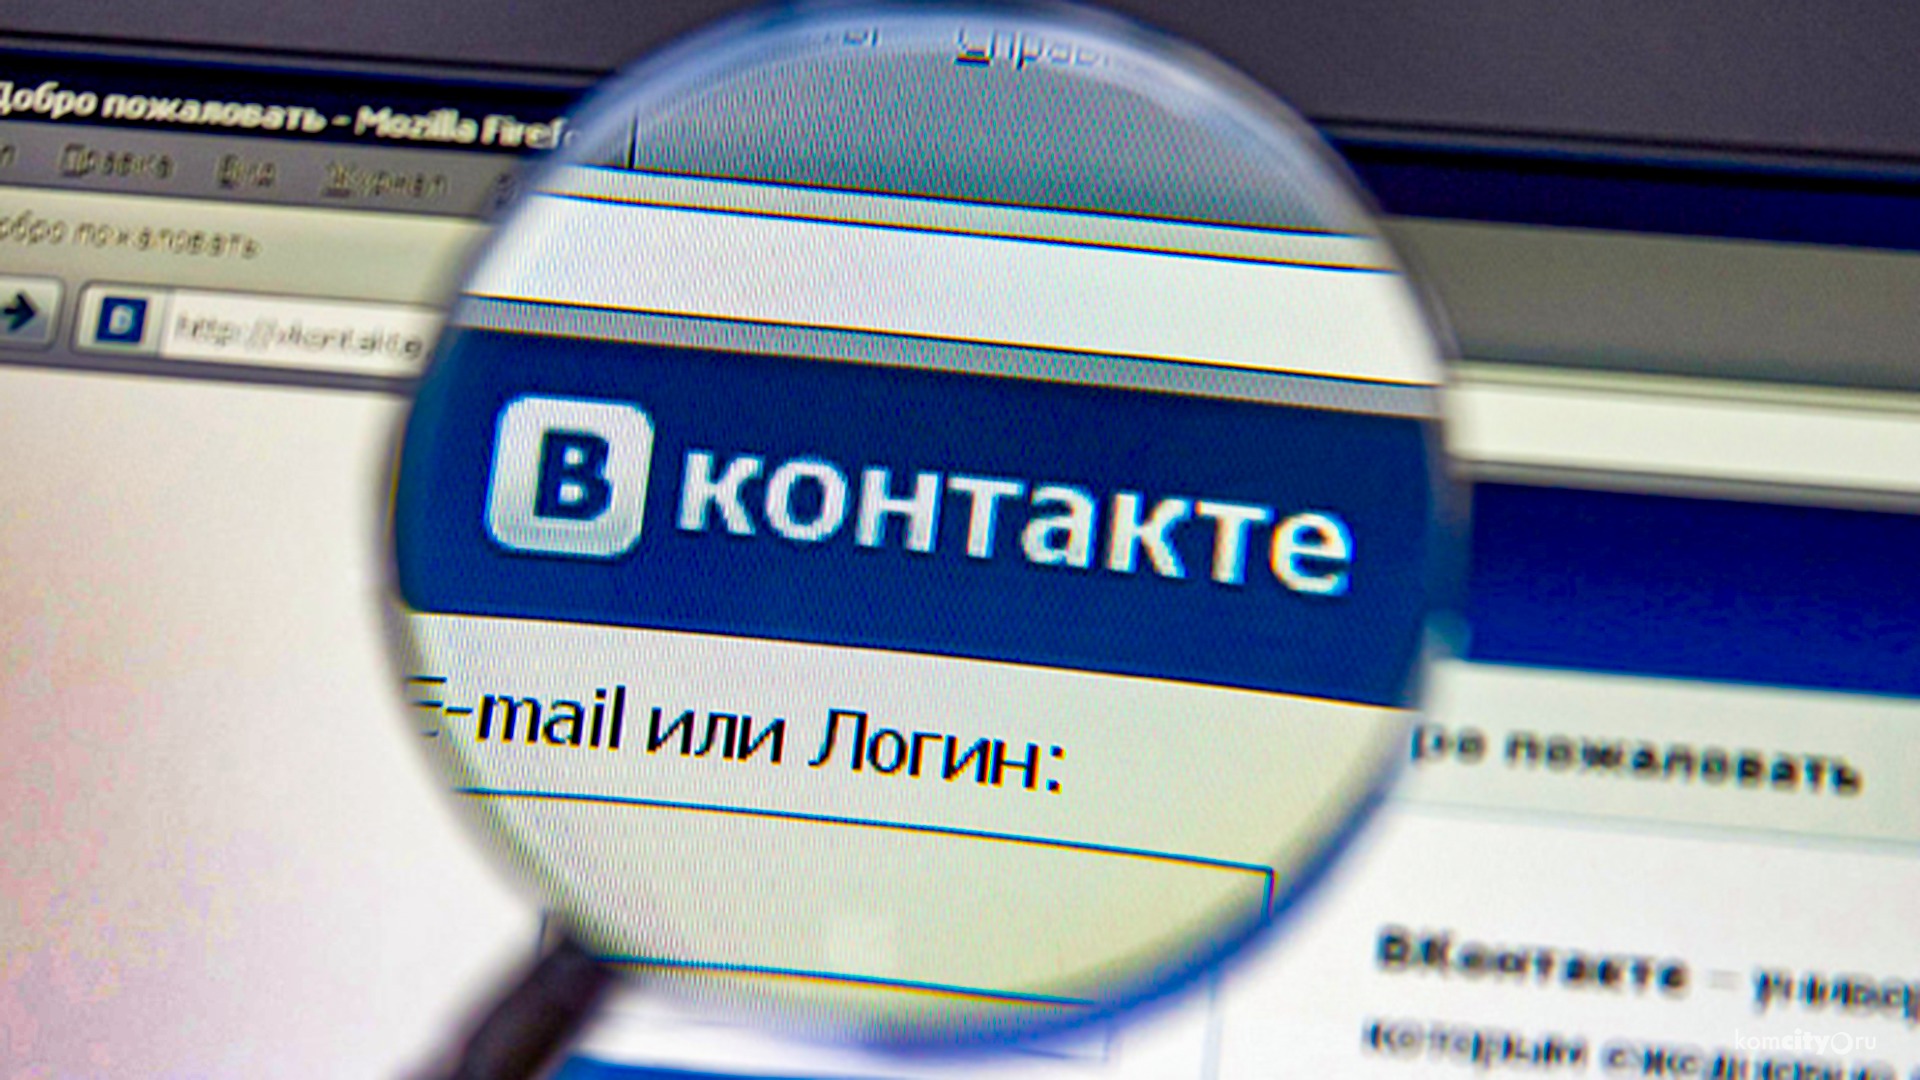 Двух комсомольчан приговорили к 10-тысячному штрафу за националистические посты «Вконтакте»